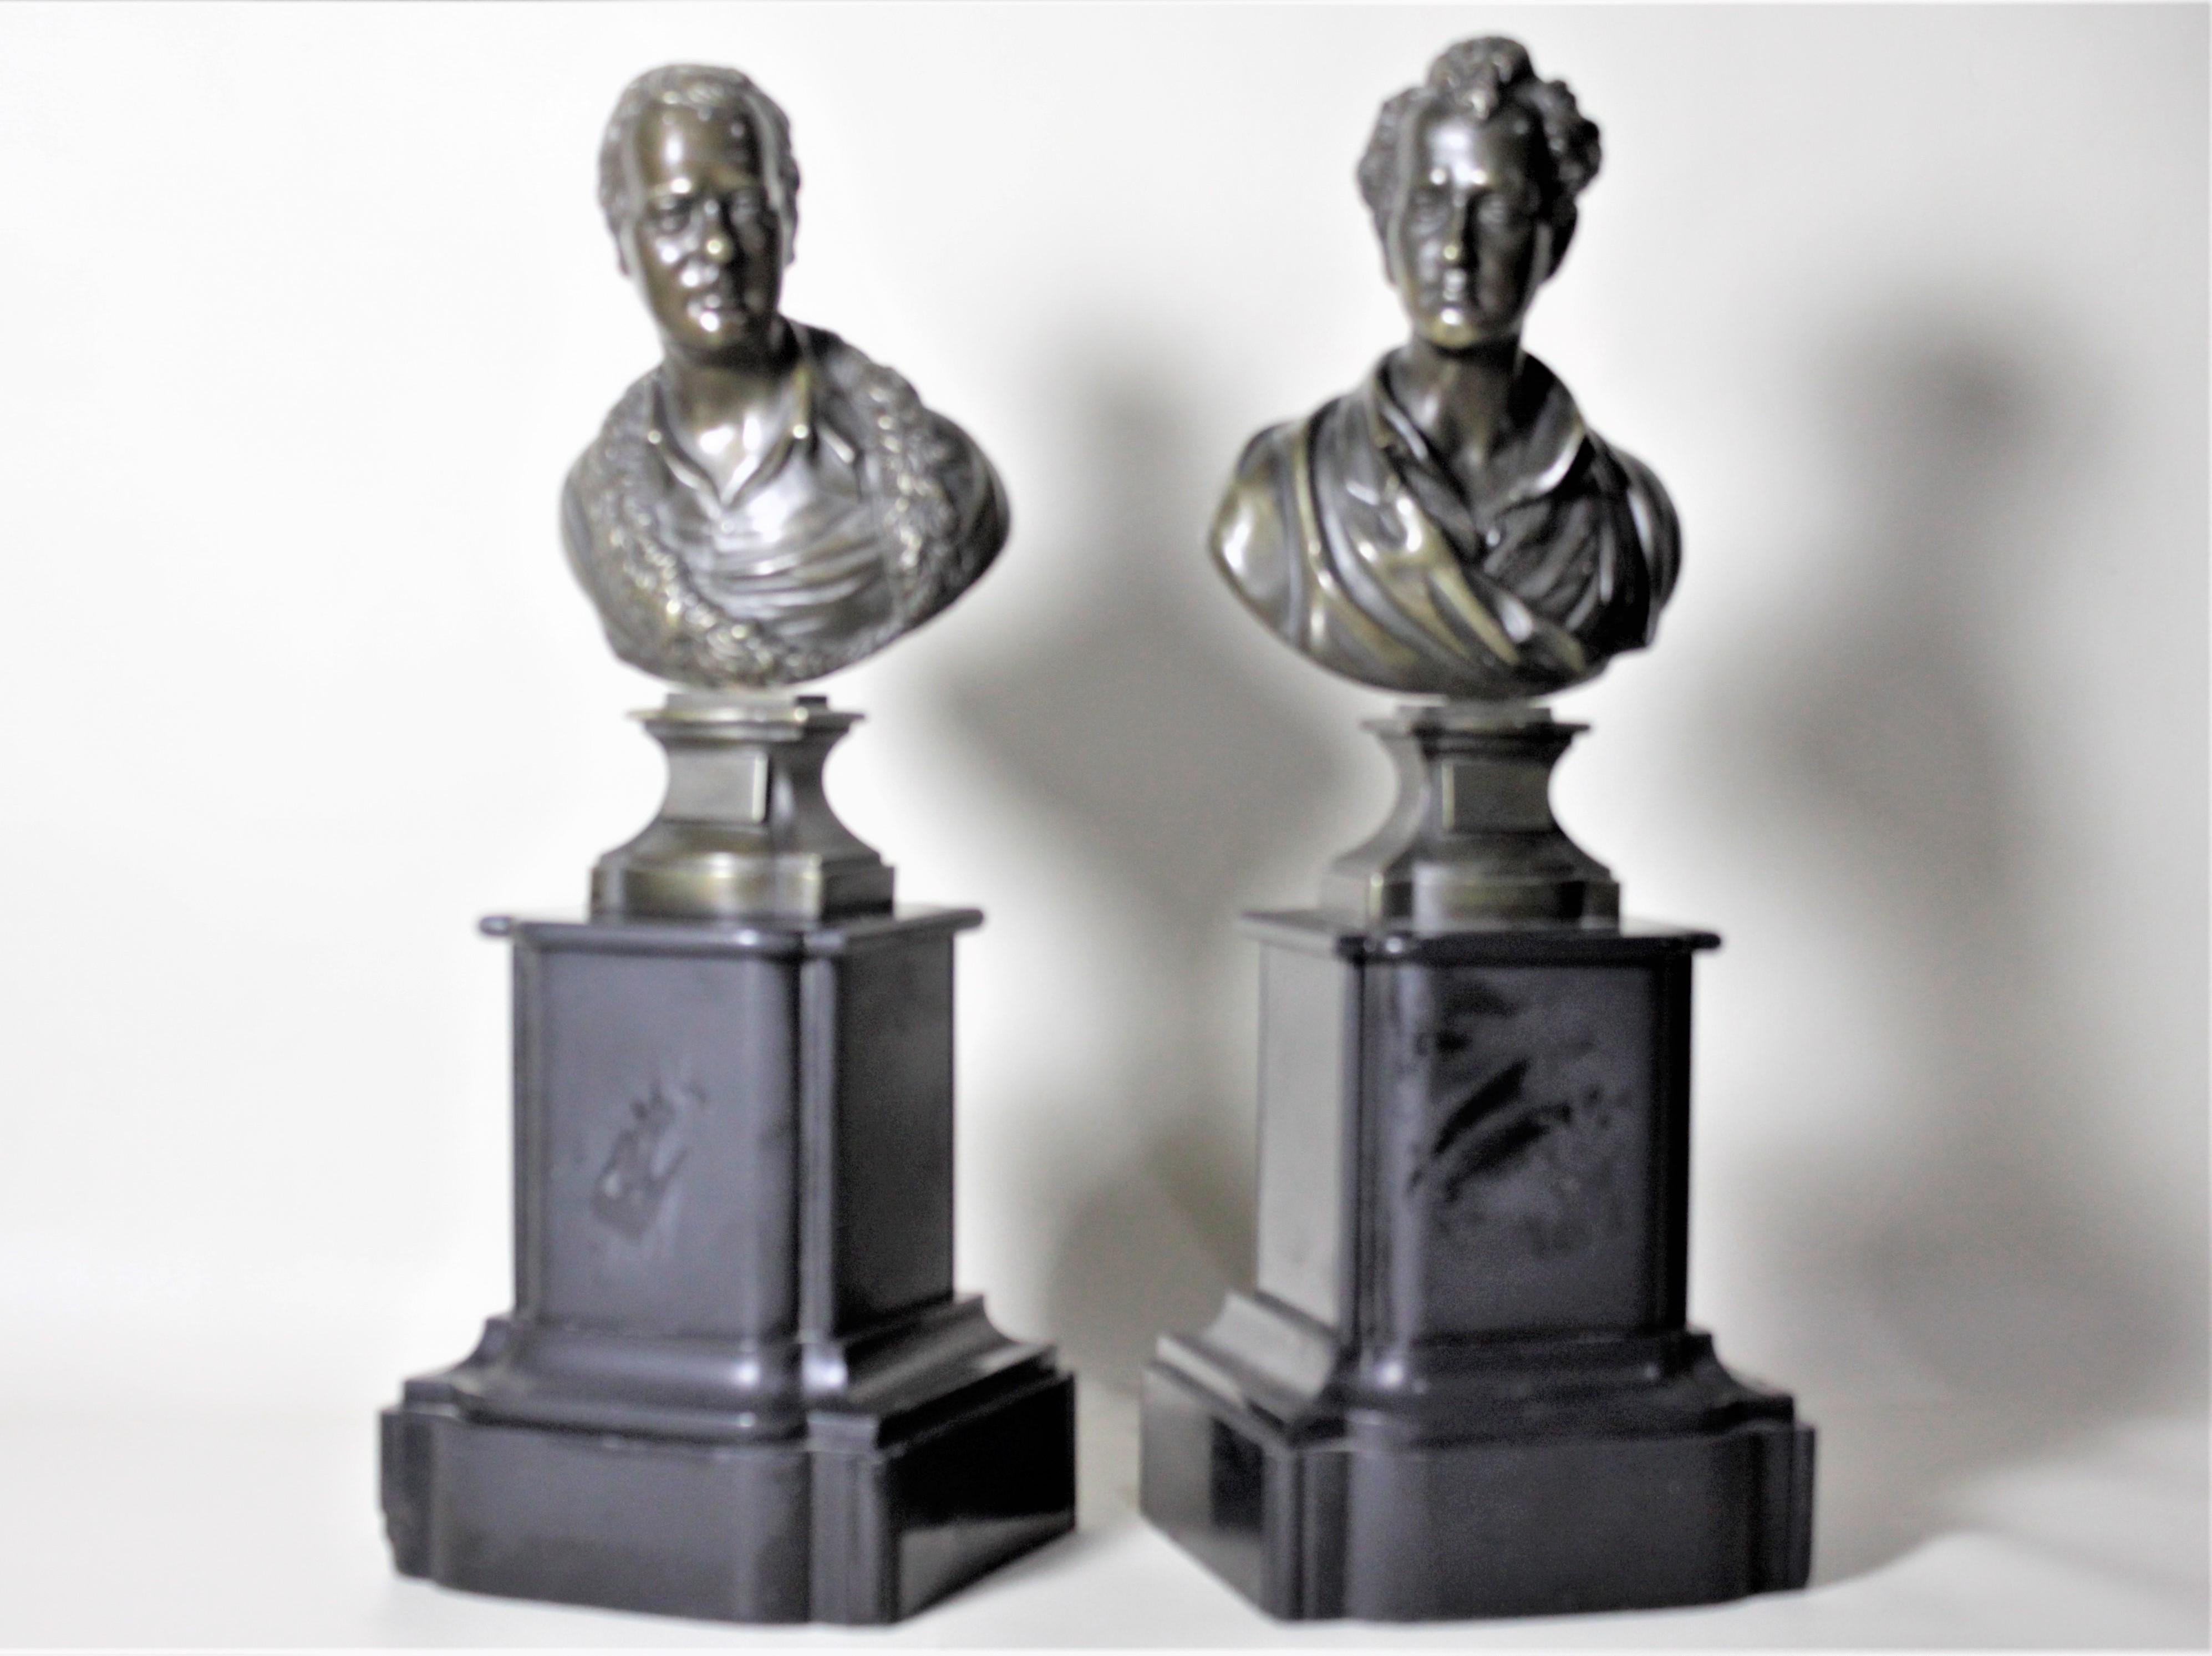 Cette paire de statues anciennes en bronze n'est pas marquée, mais on suppose qu'elle a été fabriquée en Angleterre vers 1900. Ces statues sont bien exécutées et représentent les deux célèbres poètes, Robert Burns et Walter Scott respectivement.